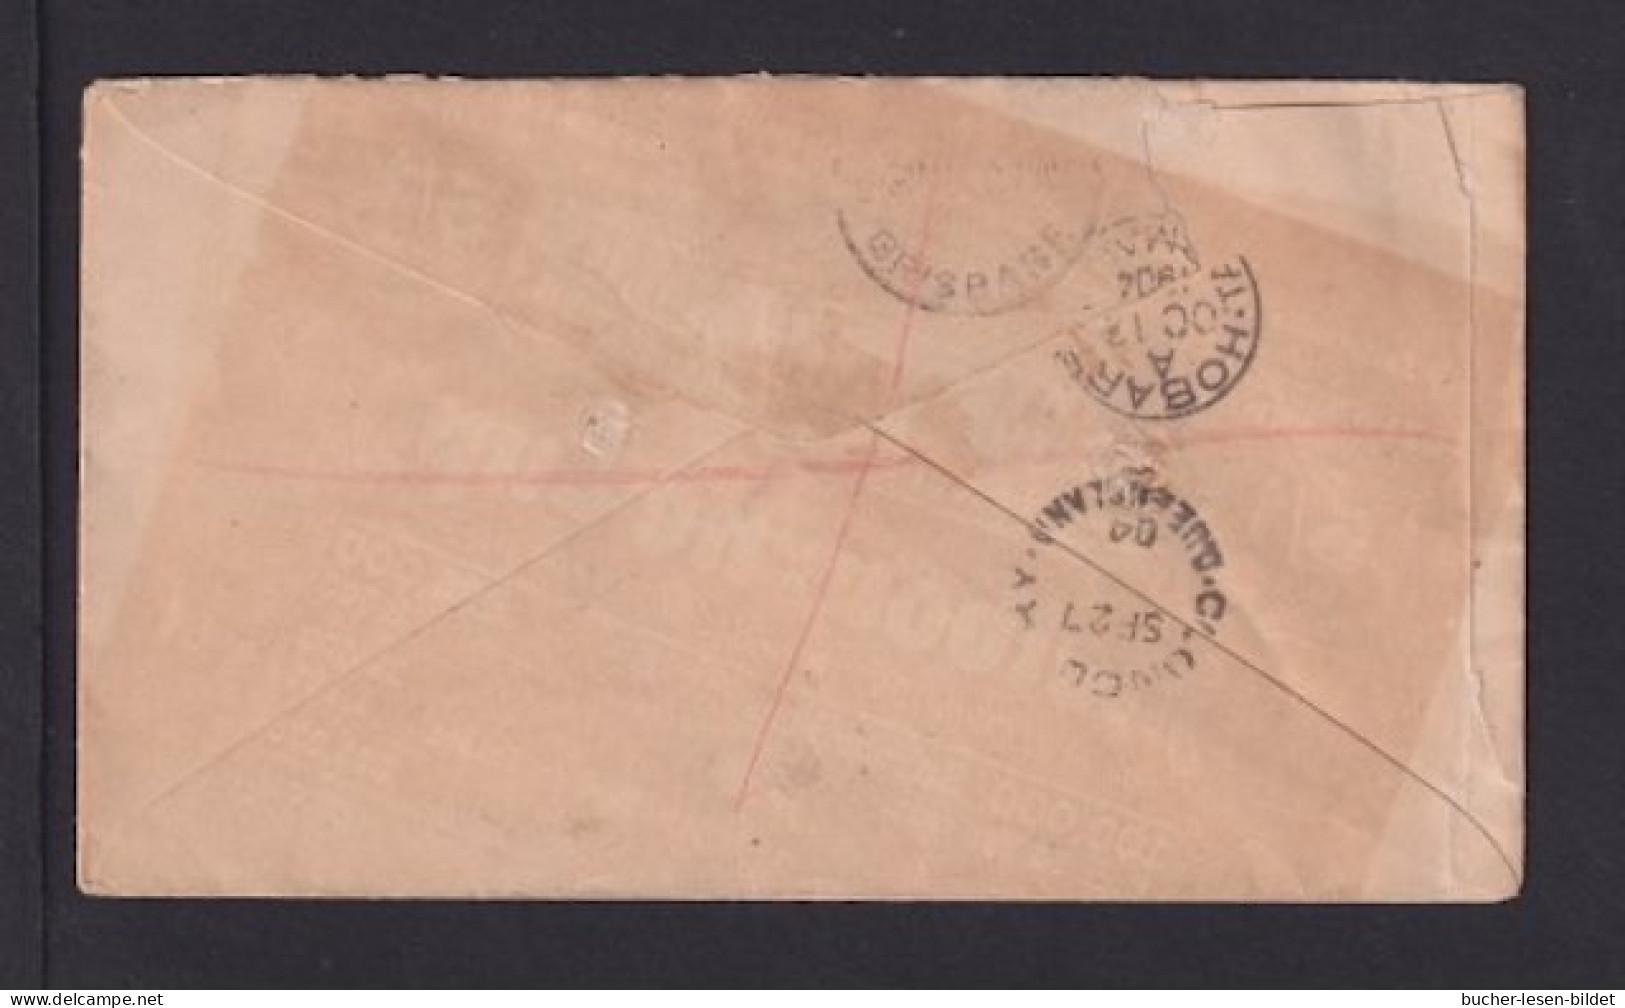 1904 - 1 P. Und 2x 2 P. Auf Einschreibbrief Ab CAMOOWEAL Nach Hobart - Lettres & Documents